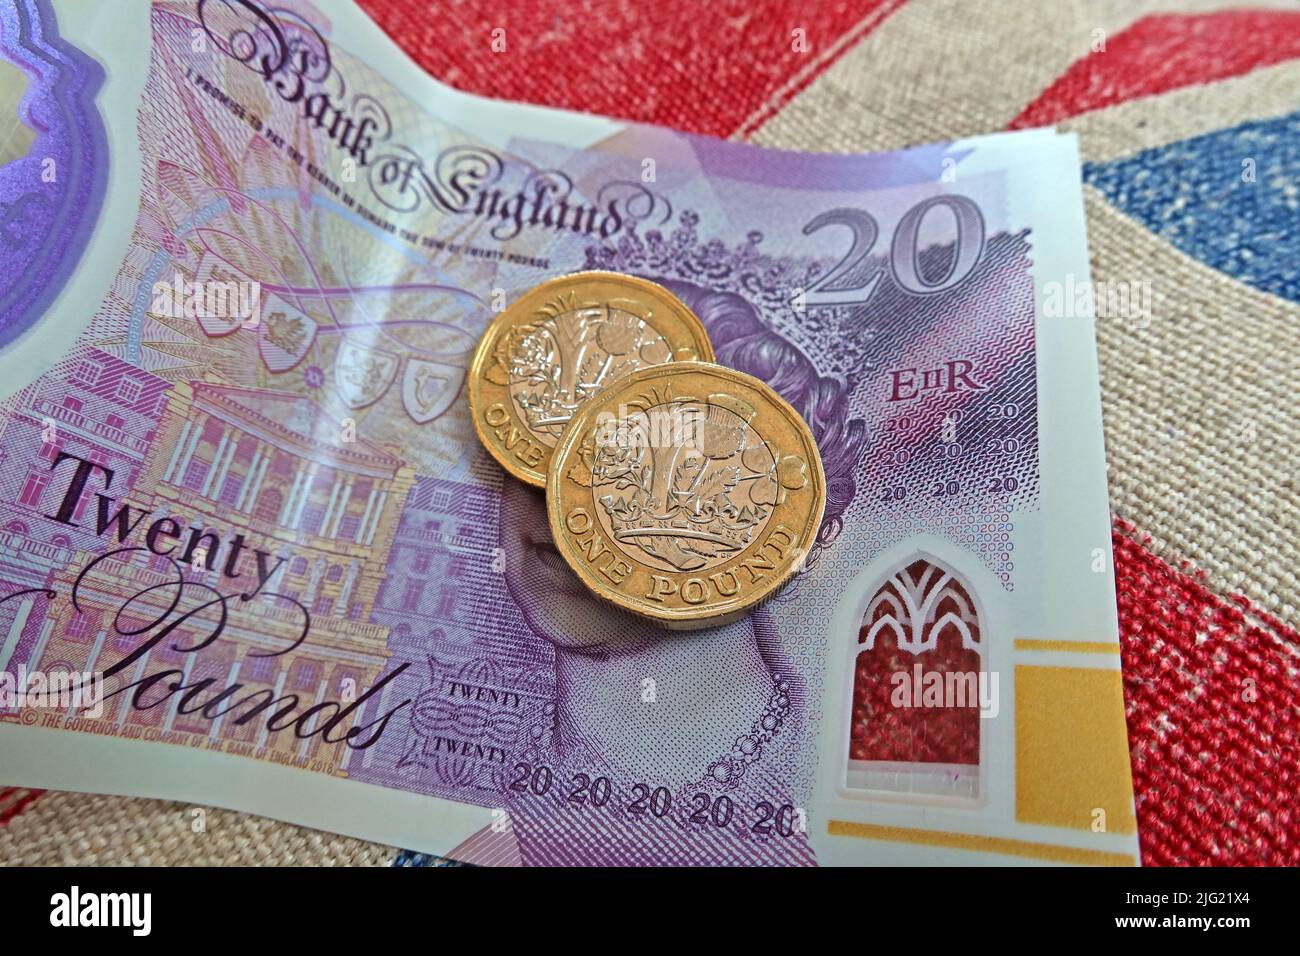 Sterling-Pfund-Scheine, Bank von England und Pfund-Münzen auf einer Gewerkschaft Jack Flagge - Lebenshaltungskosten Krise, in Großbritannien / GB Stockfoto